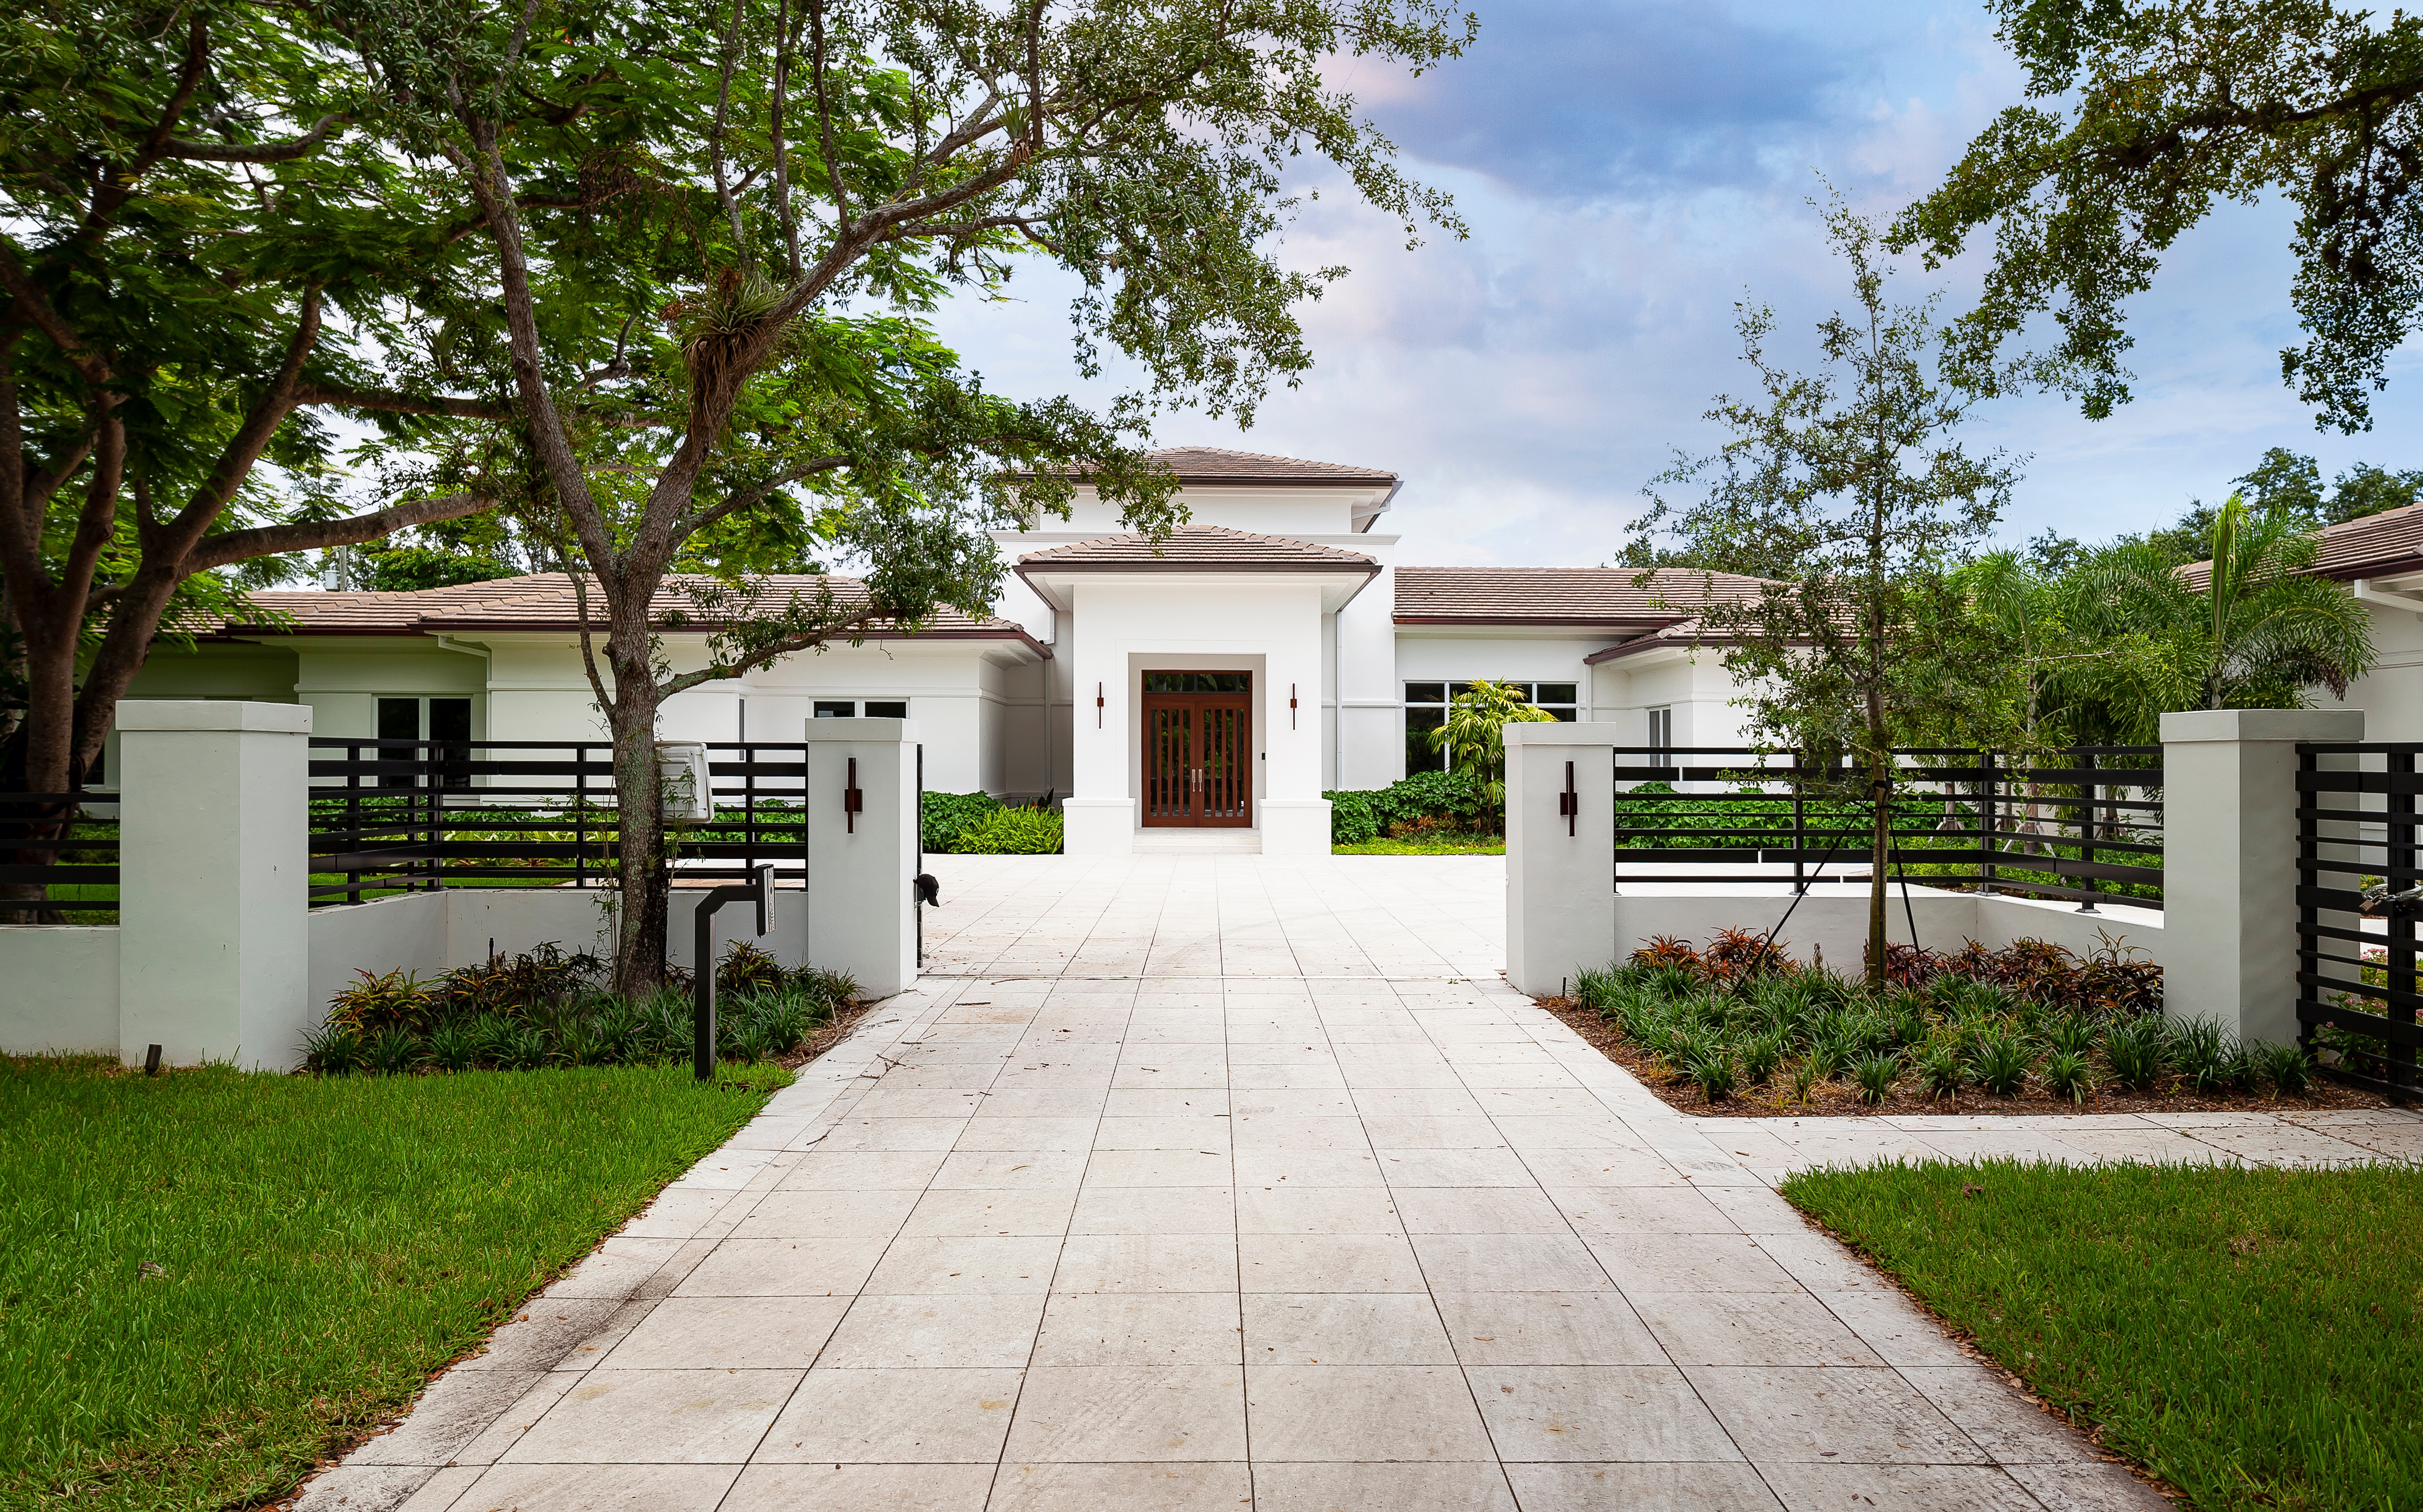 Elegant mansion entrance. | Source: Shutterstock